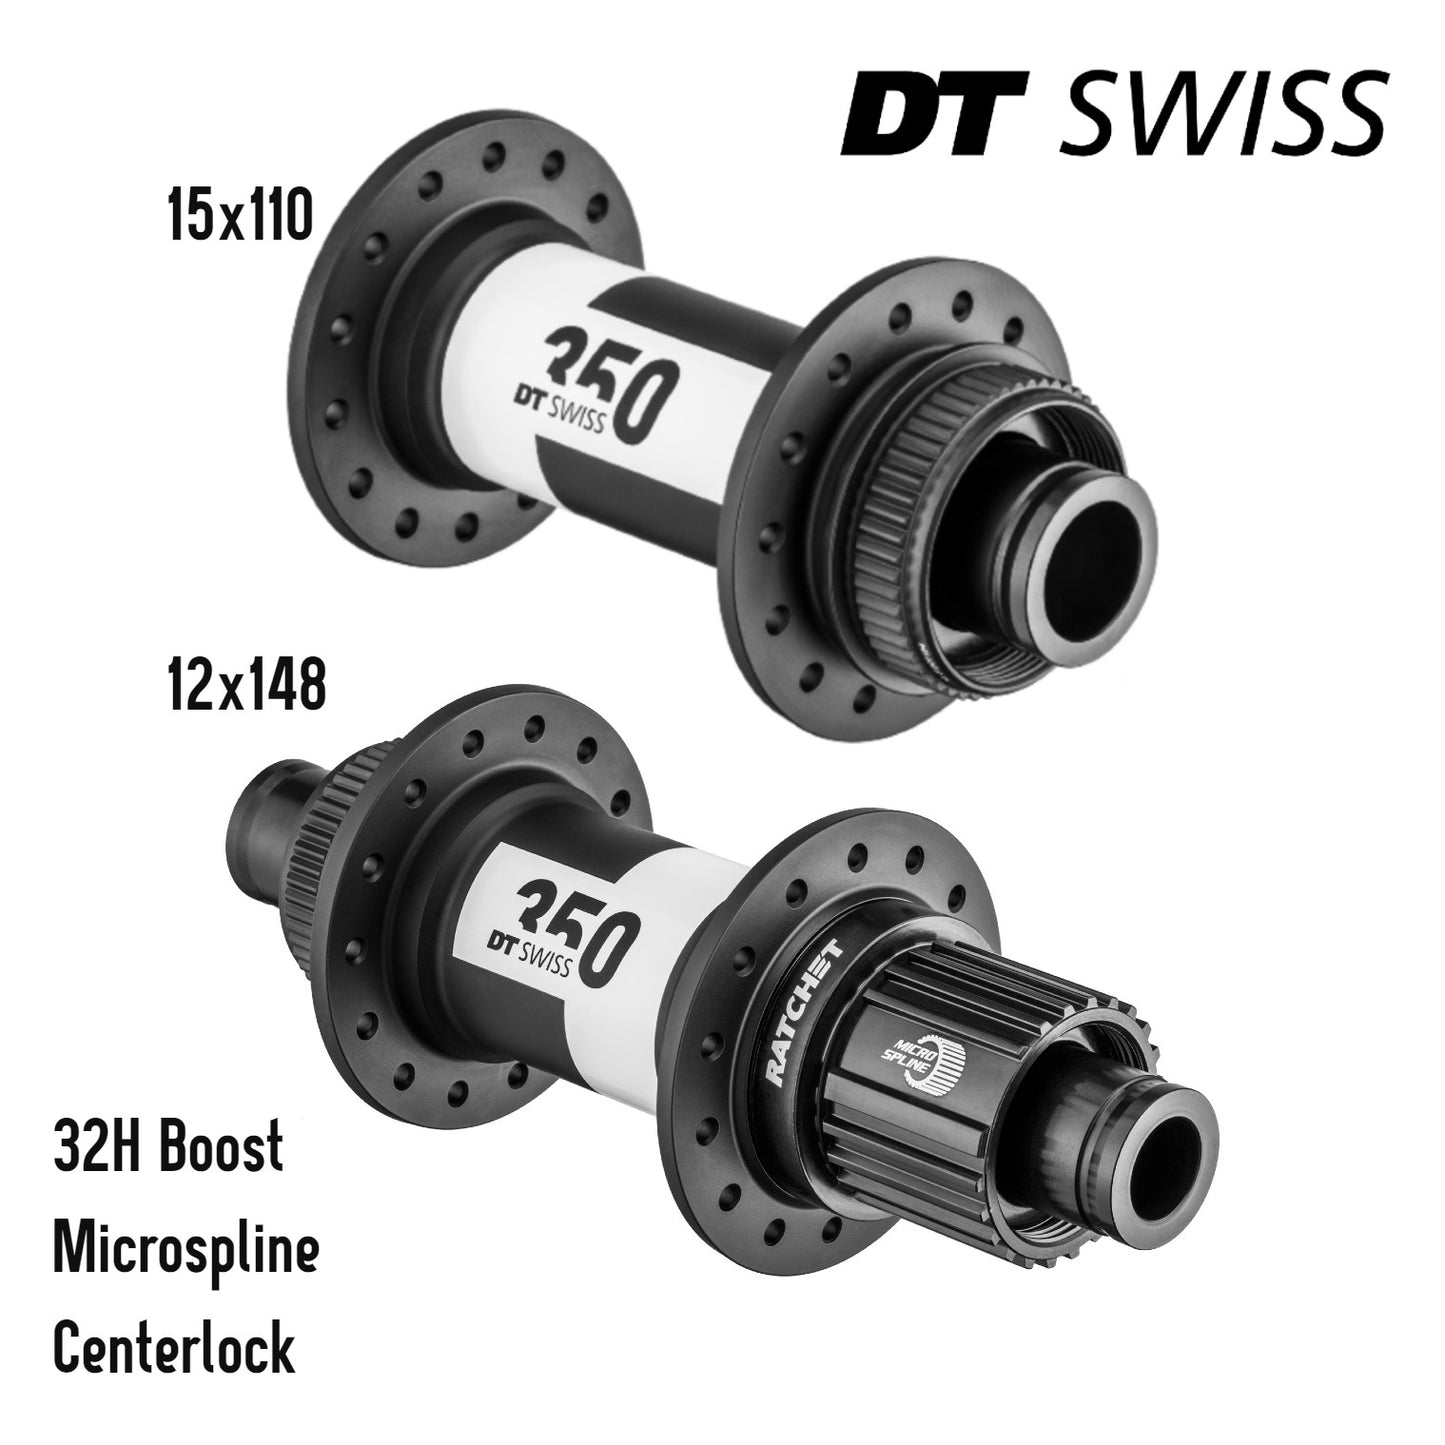 DT Swiss 350 Boost MTB Hub Set Front 15x110 Rear 12x148 Microspline Centerlock